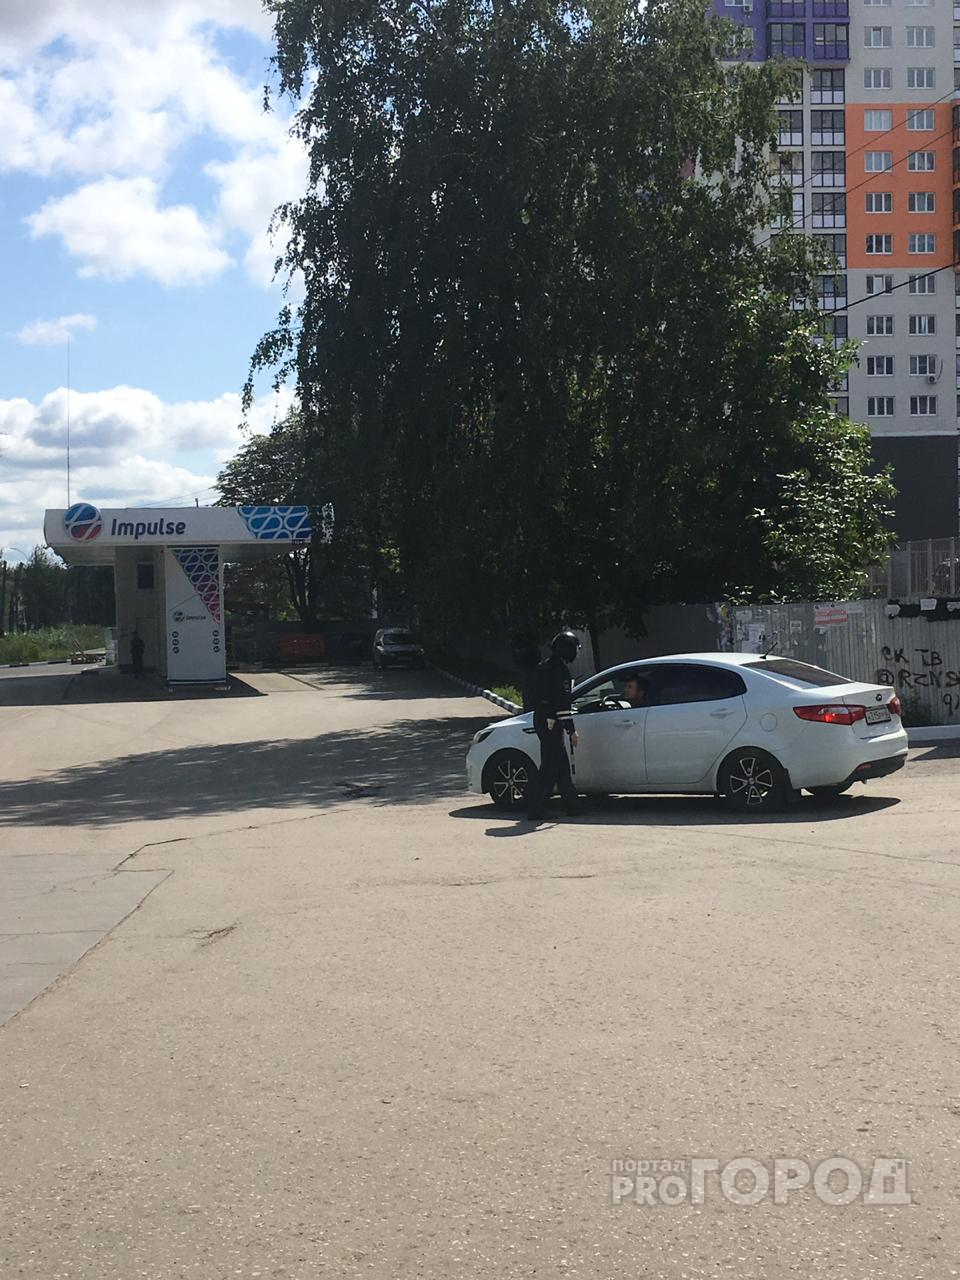 Московское шоссе перекрыто. Очевидцы сообщают о происшествии на автовокзале